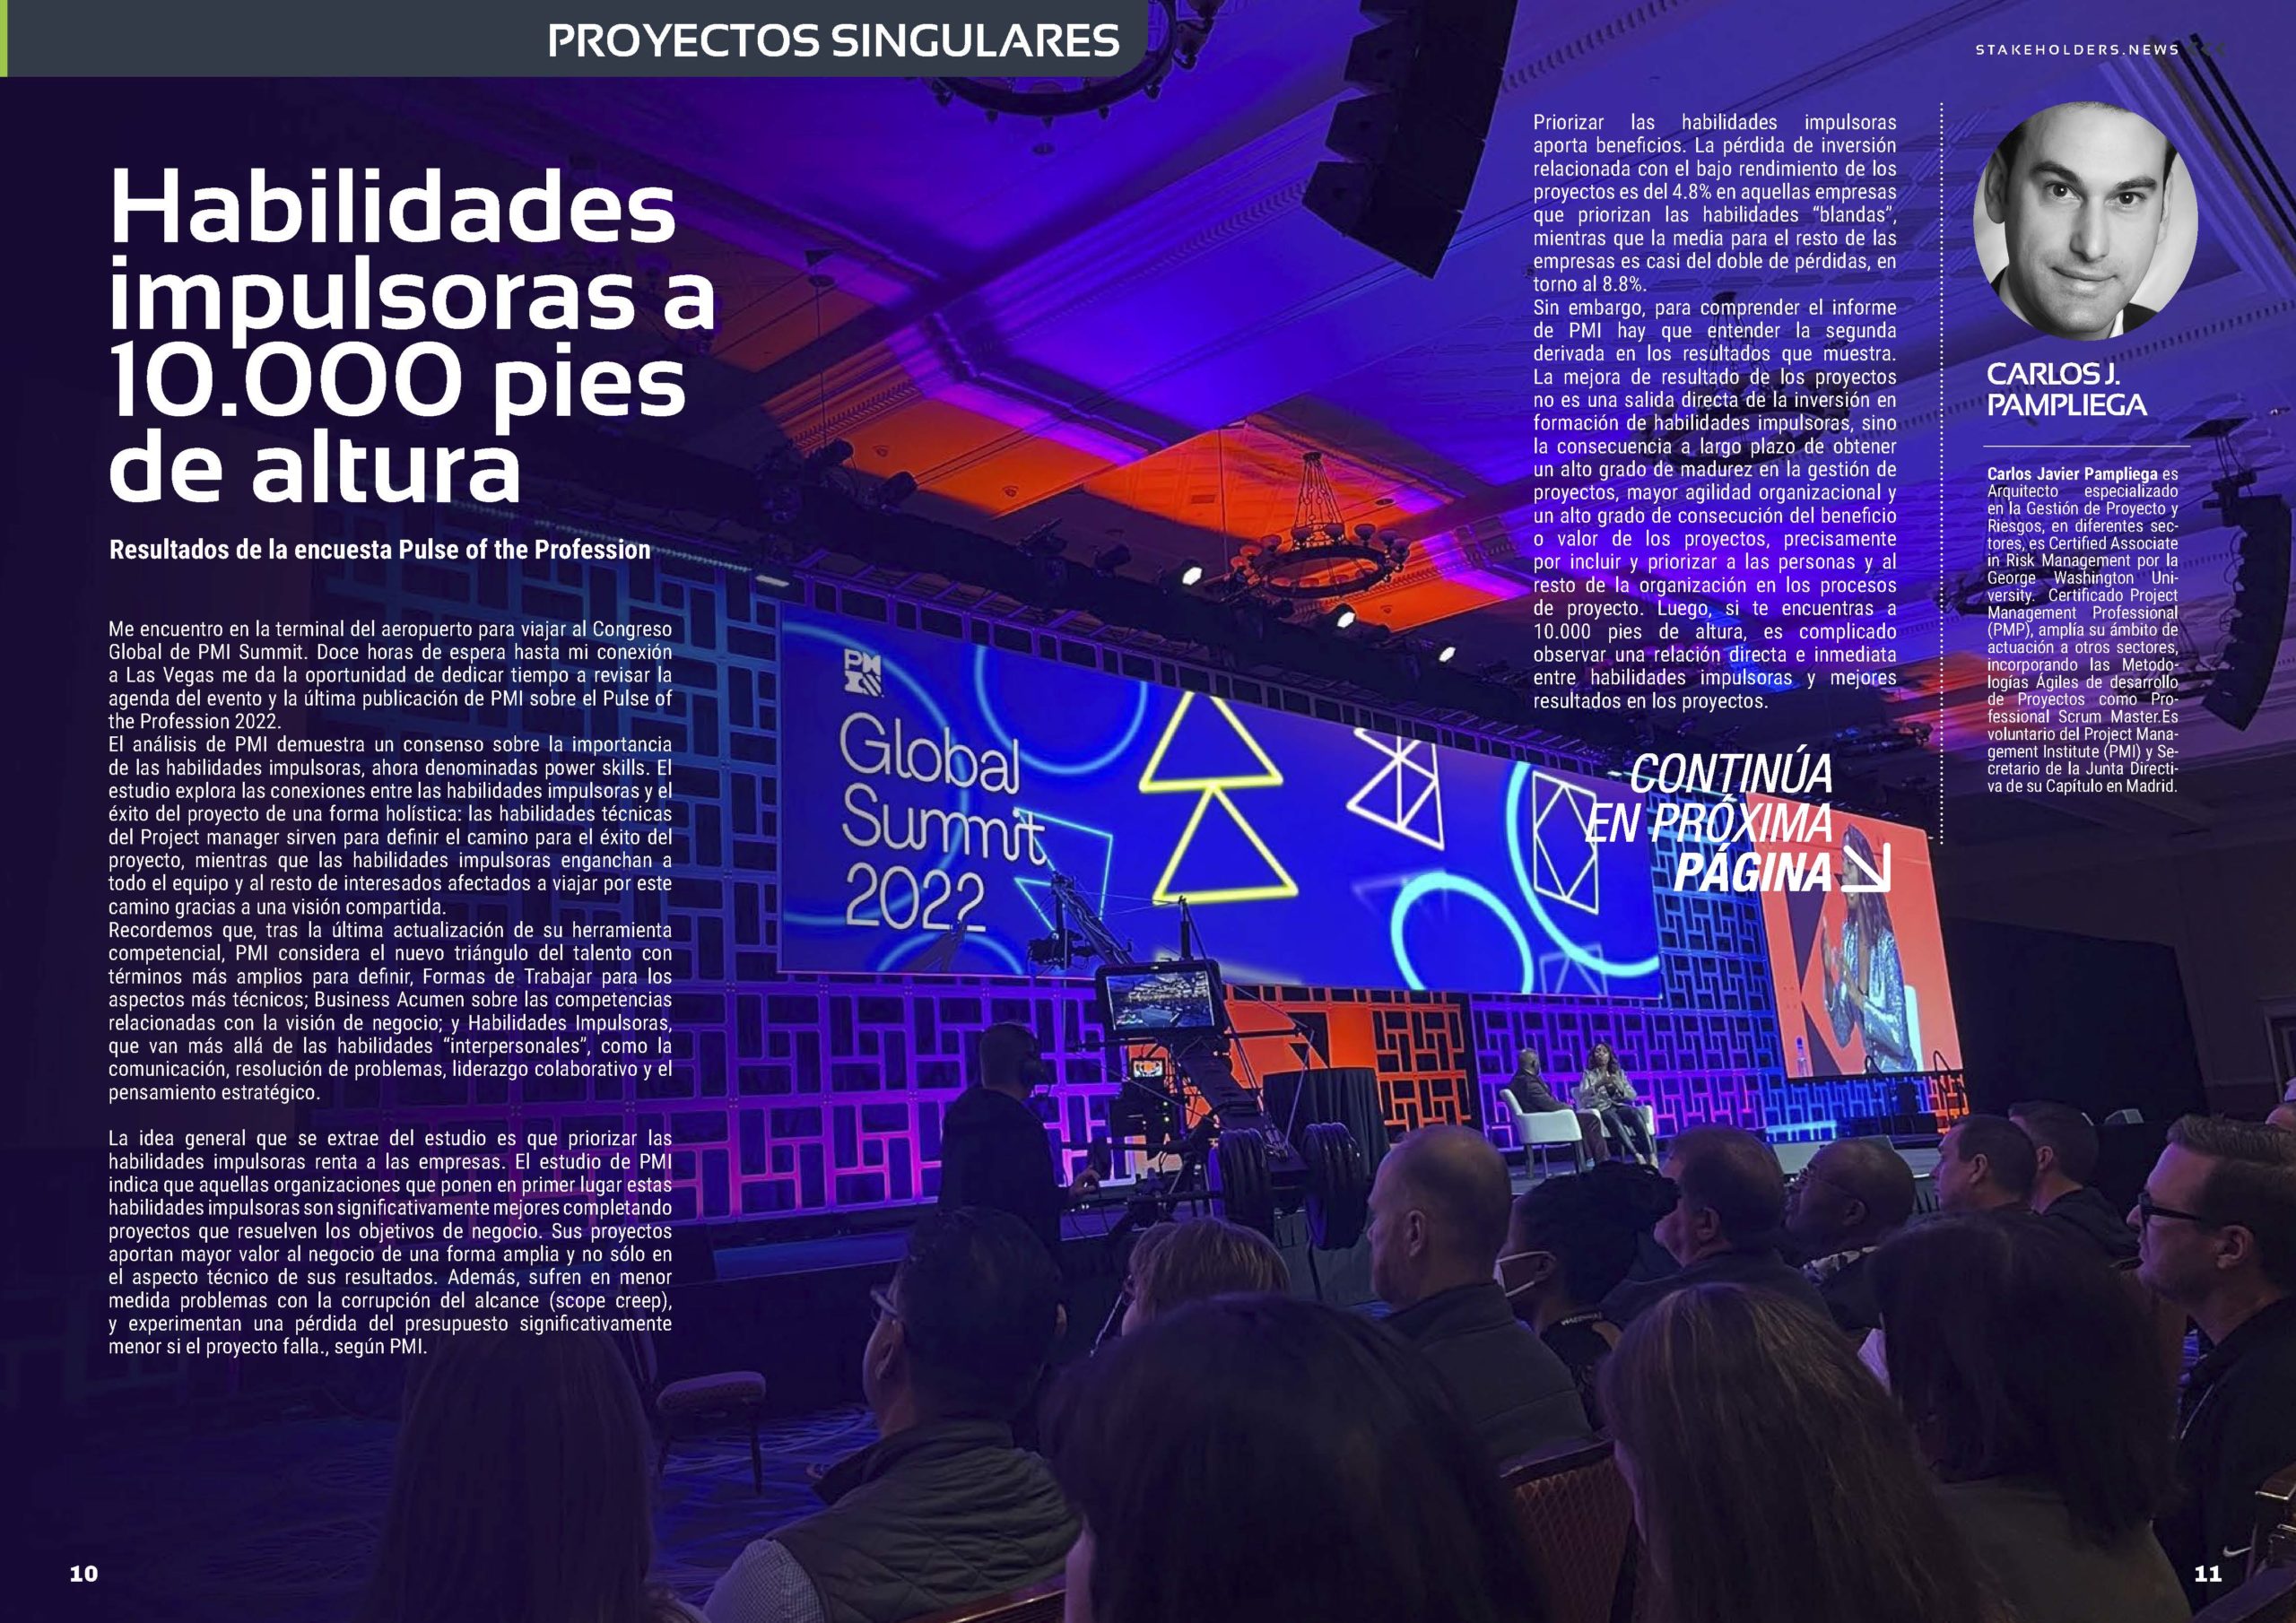 Artículo "Habilidades impulsoras a 10.000 pies de altura" de Carlos Pampliega en la Revista Stakeholders.news